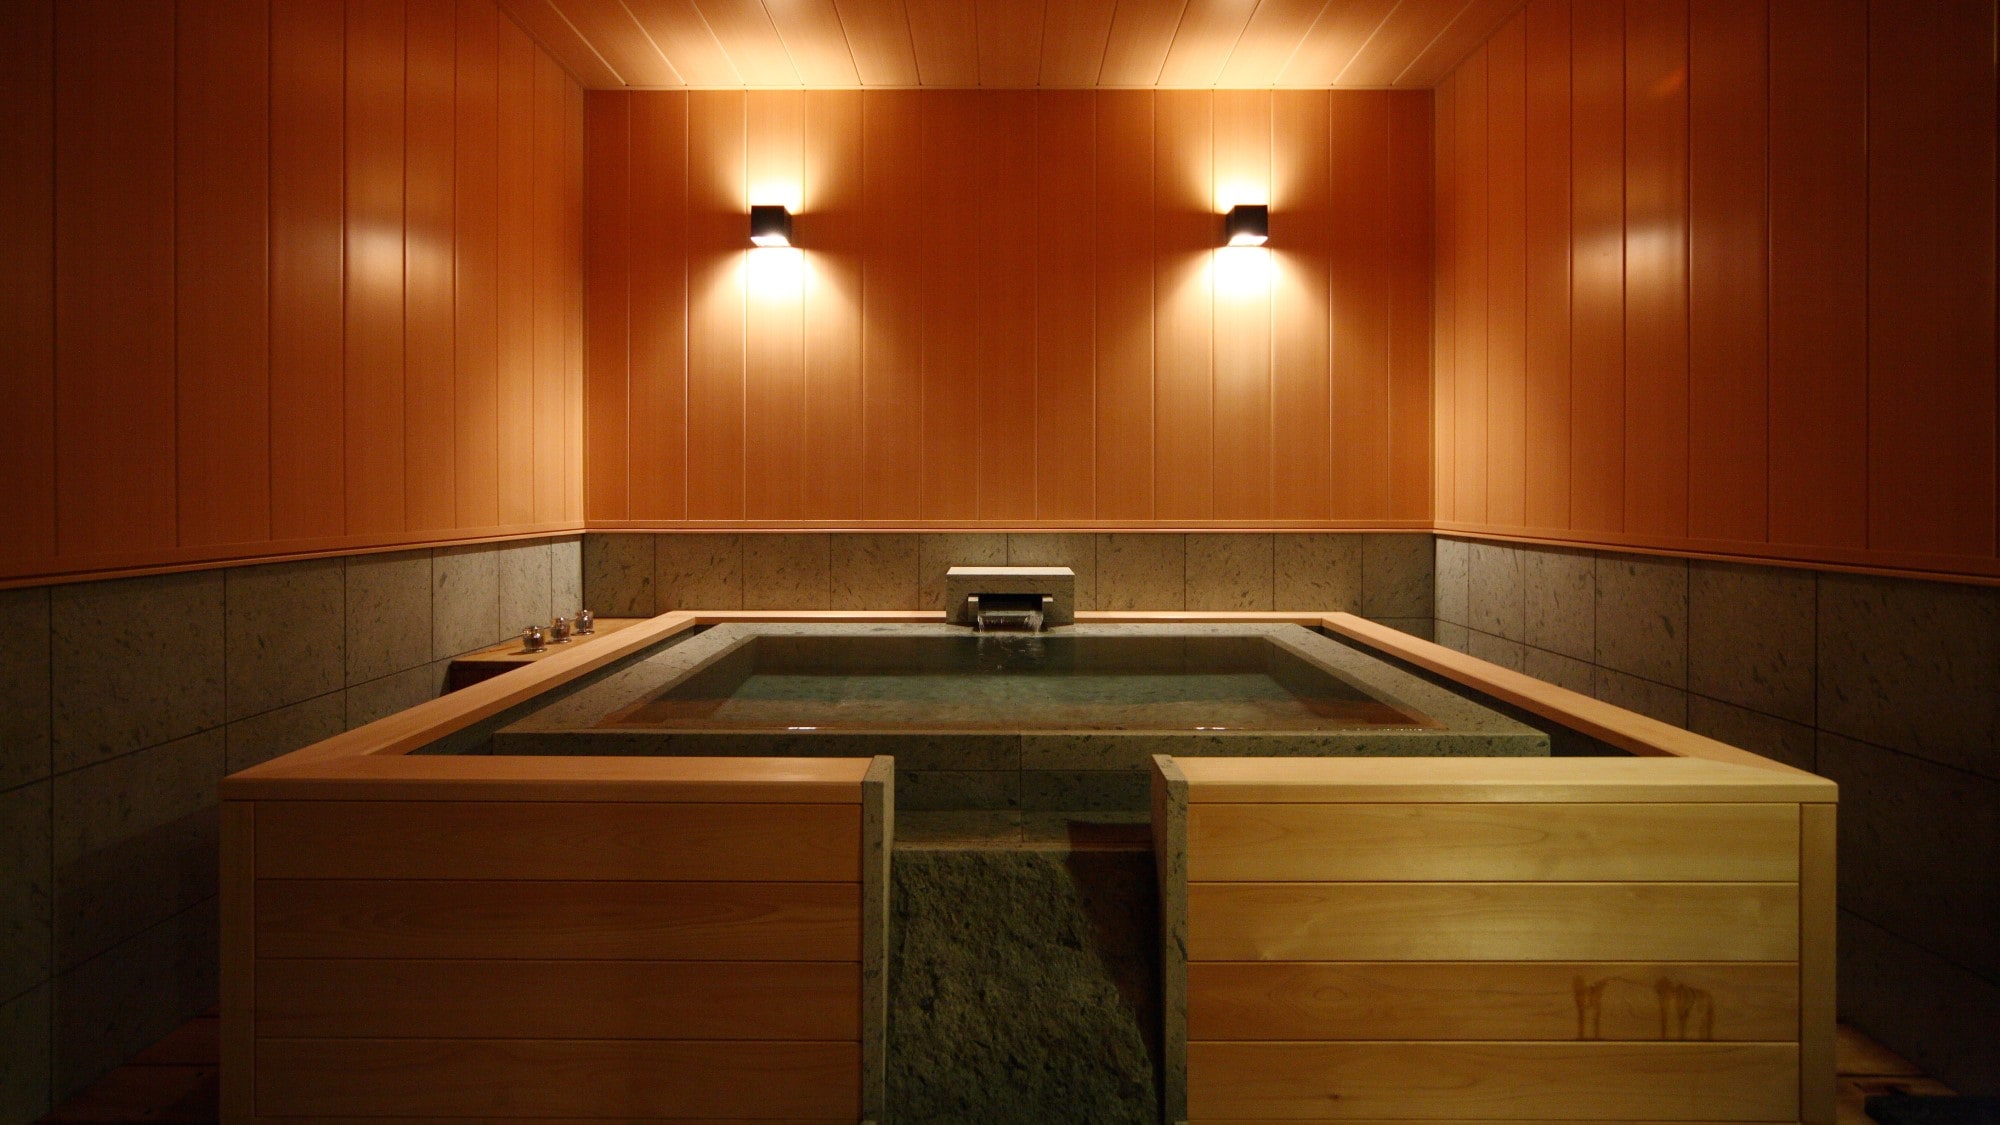 ☆ 水疗套房“Kikumanyo”平面型室内家庭浴室形象